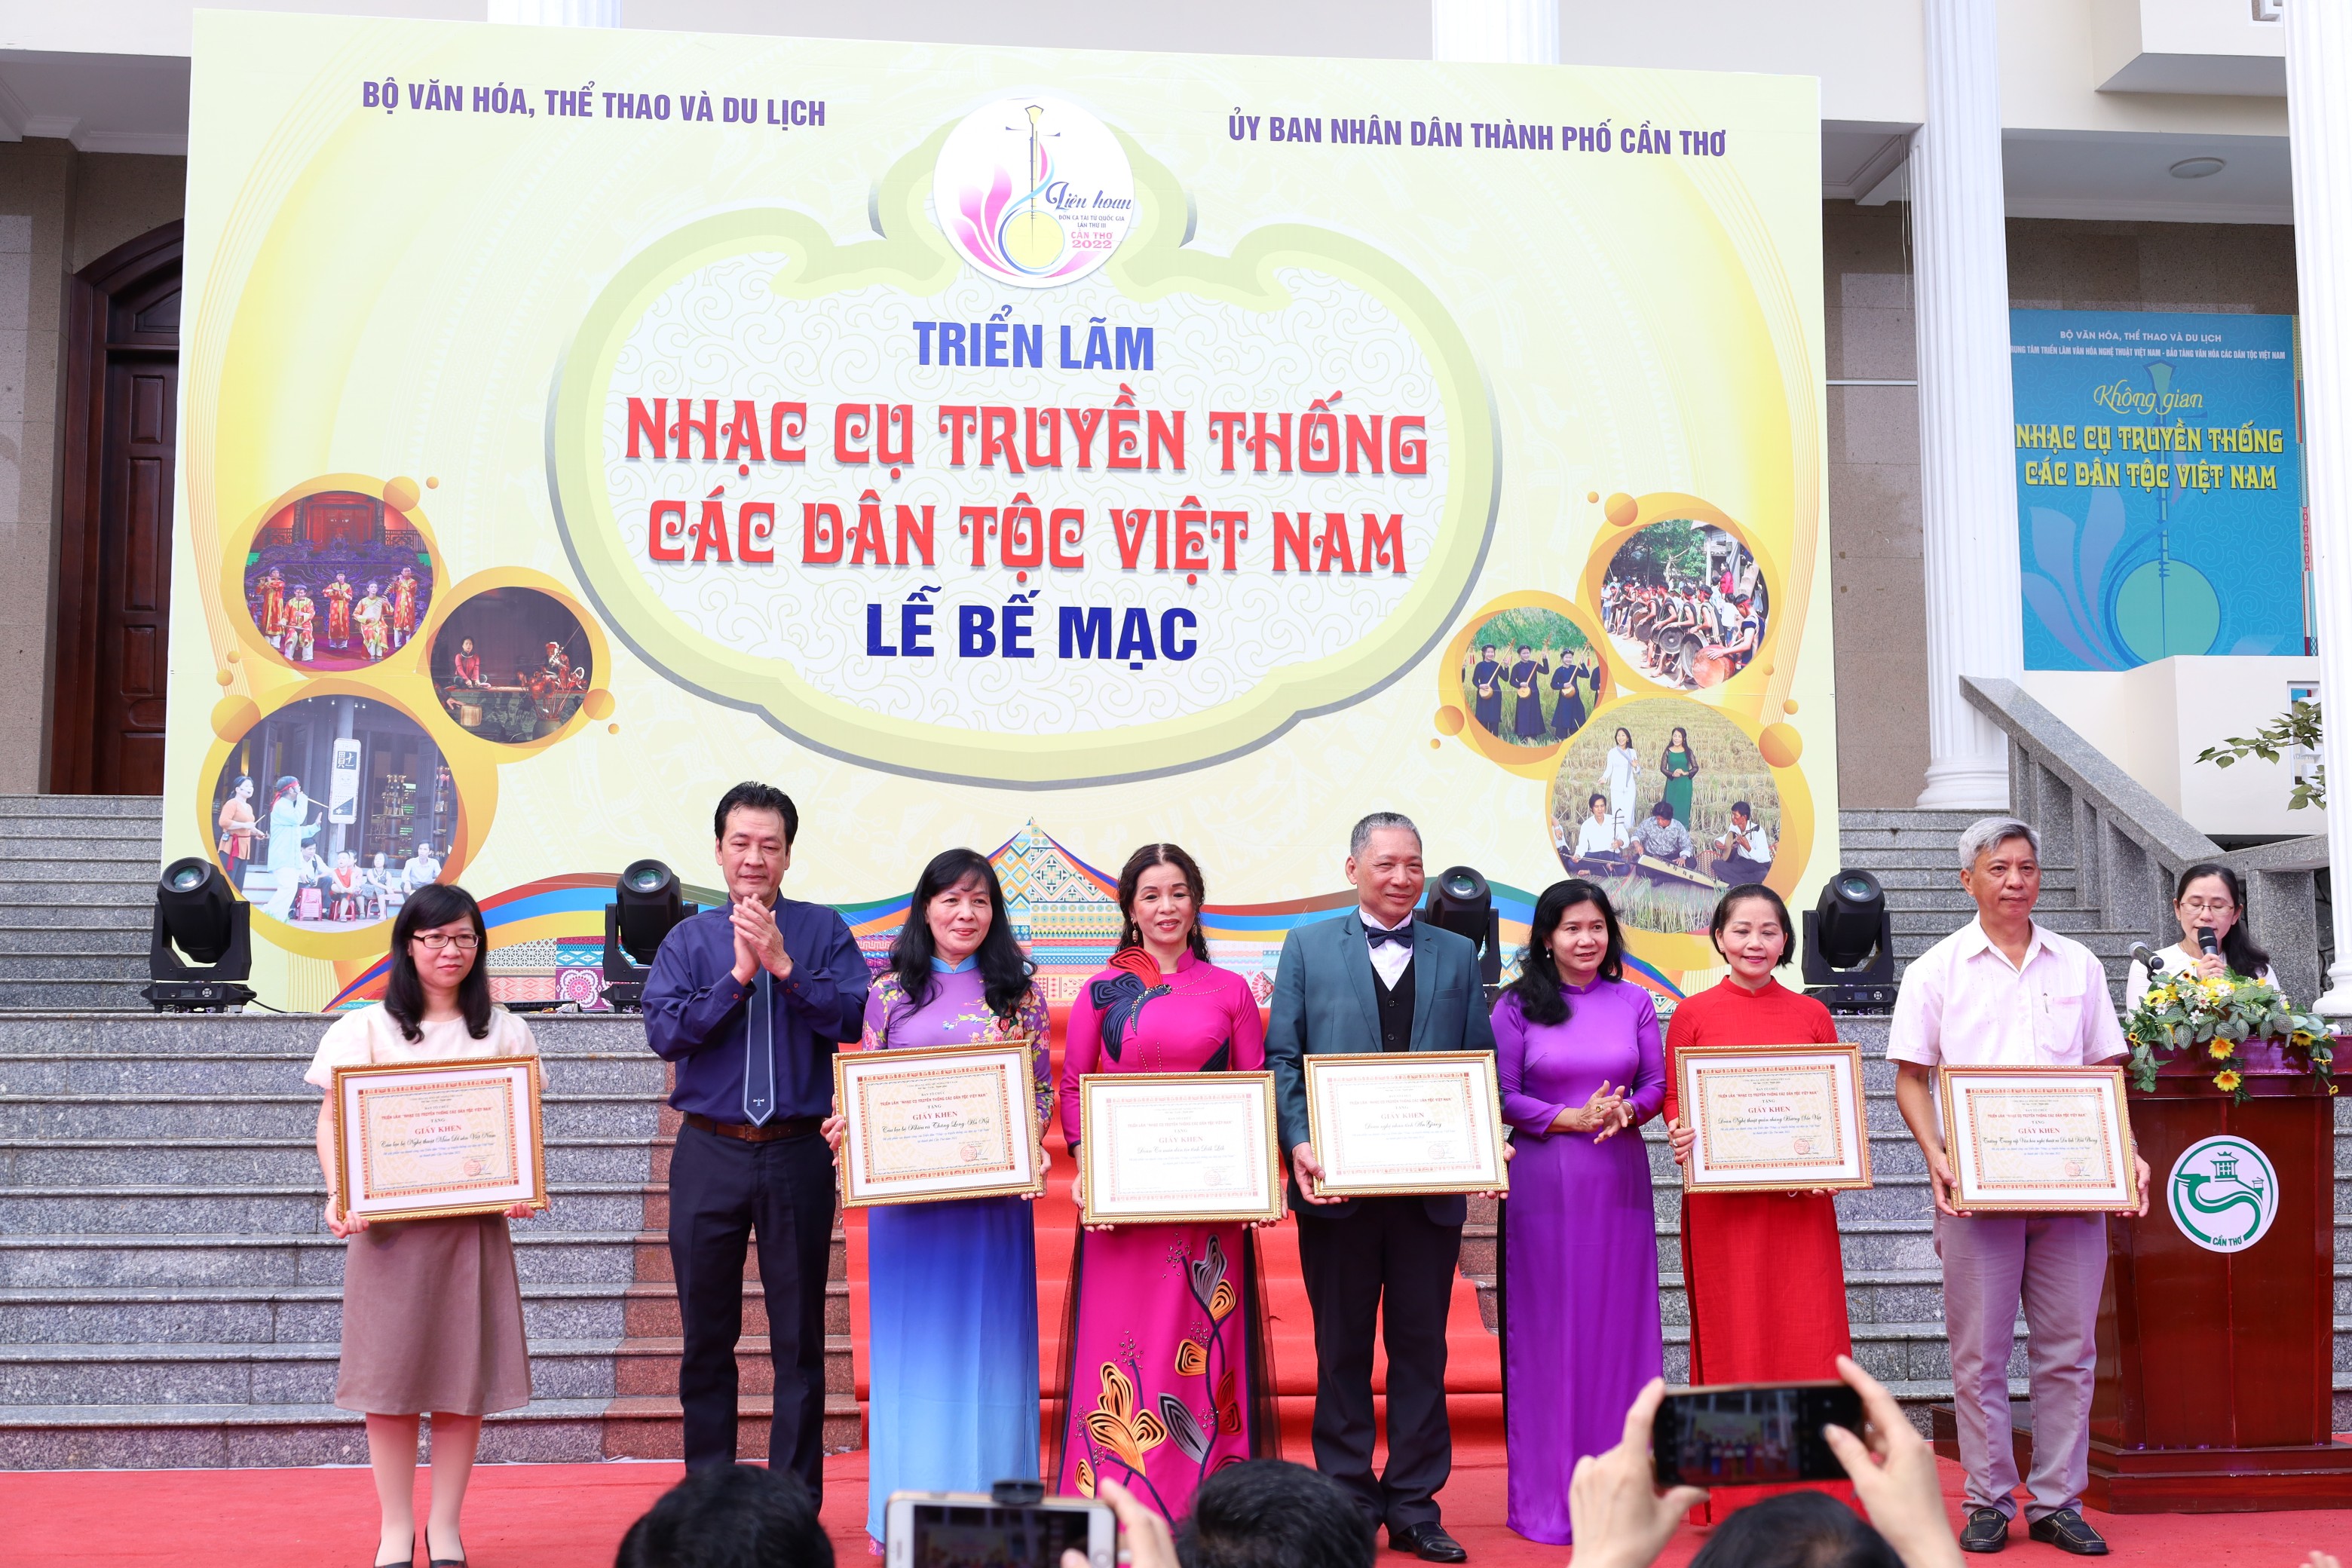 Dịp này, nhiều tập thể có thành tích trong việc tham gia Triển lãm “Nhạc cụ truyền thống các dân tộc Việt Nam” đã được Bộ Văn hóa, Thể thao và Du lịch, Trung tâm Triển lãm văn hóa nghệ thuật Việt Nam khen thưởng.